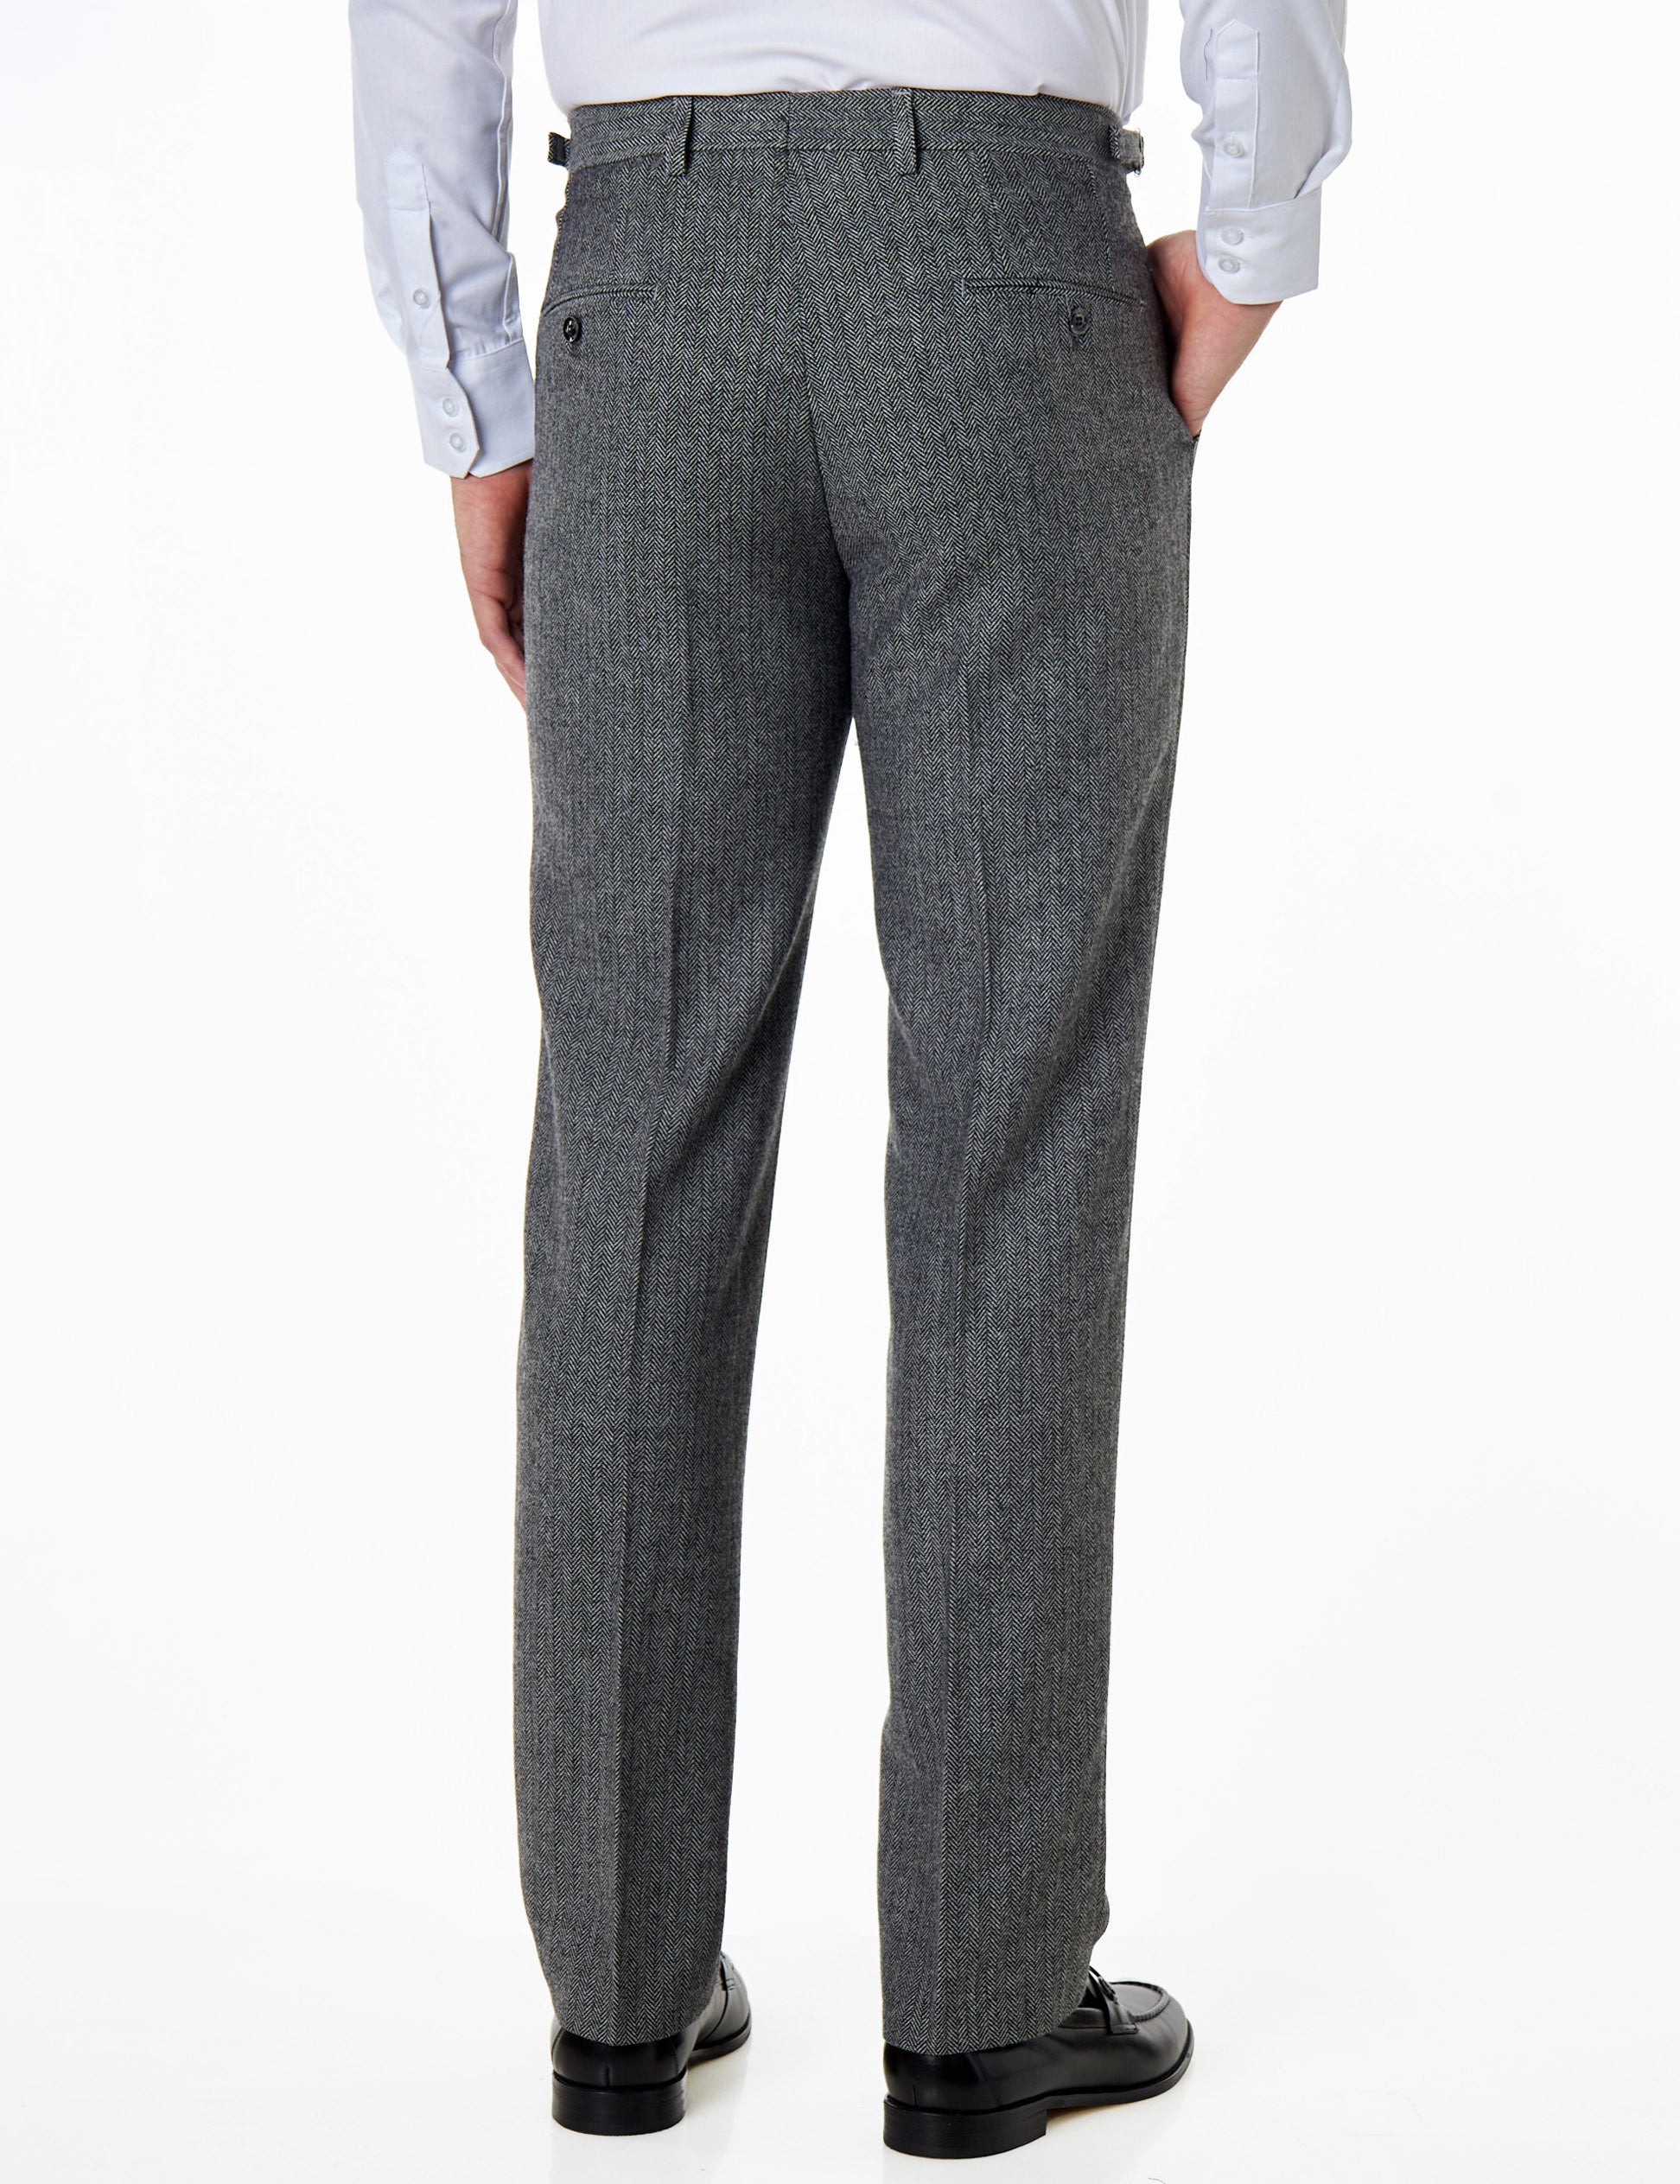 Jax -Mens Grey Herringbone Tweed Trouser